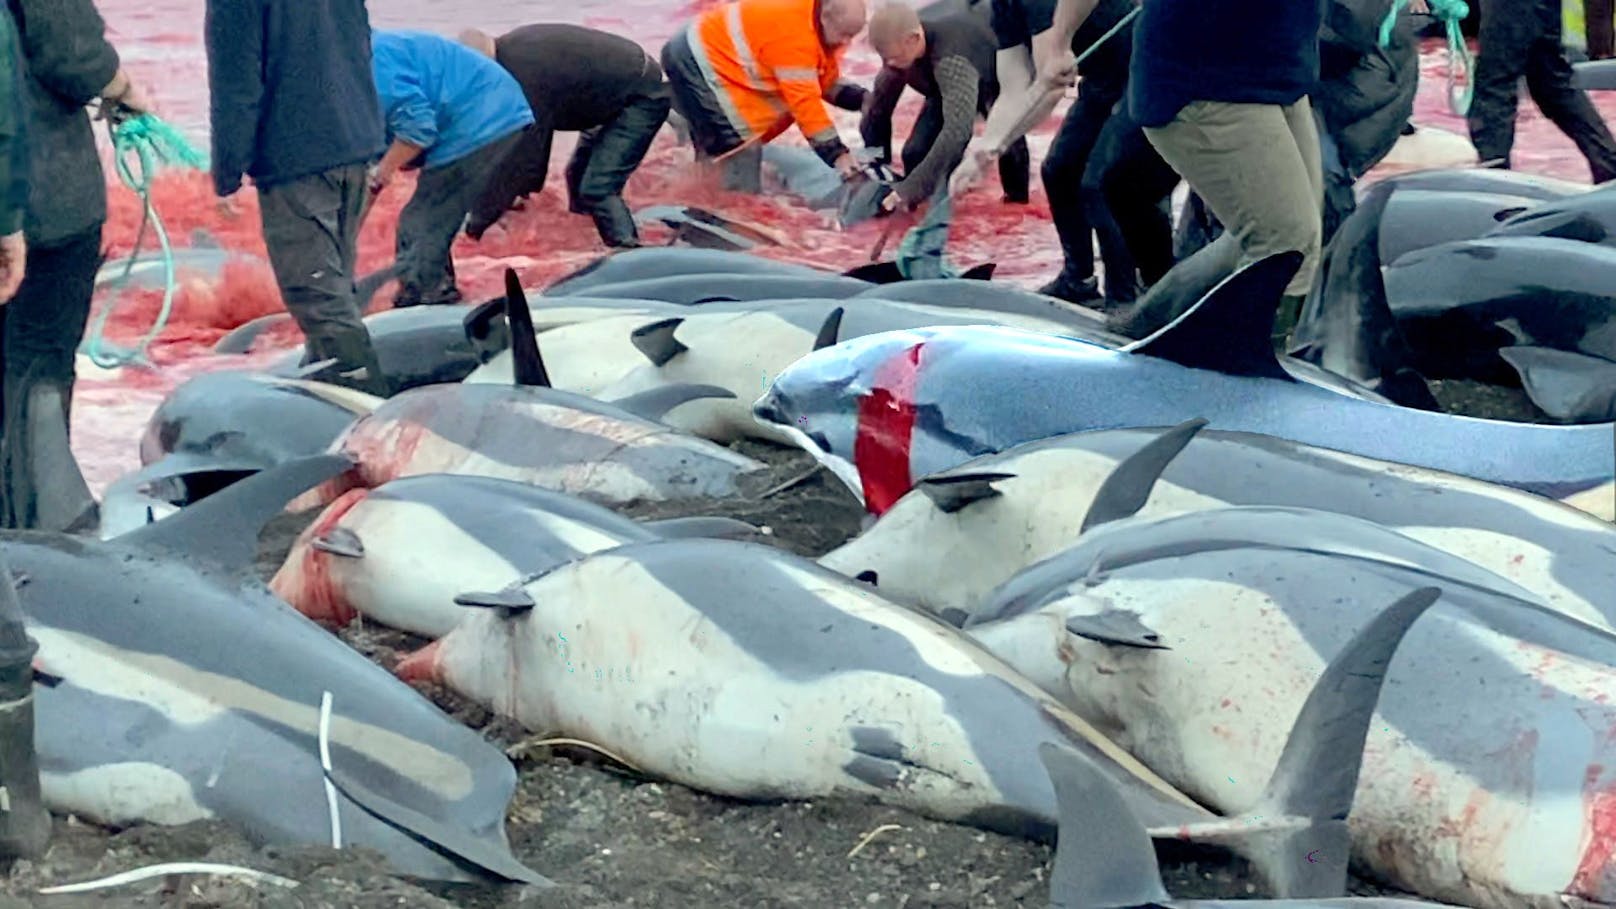 Das Delfinmassaker im Skala Fjord, wo 1.500 Kleinwale ihre Leben lassen mussten, schockierte uns alle besonders und viele haben ihre Stimme erhoben.---&gt; <a href="https://www.heute.at/s/der-jaehrliche-grind-faerbte-den-nordatlantik-dunkelrot-100163208">ARTIKEL</a> <br>